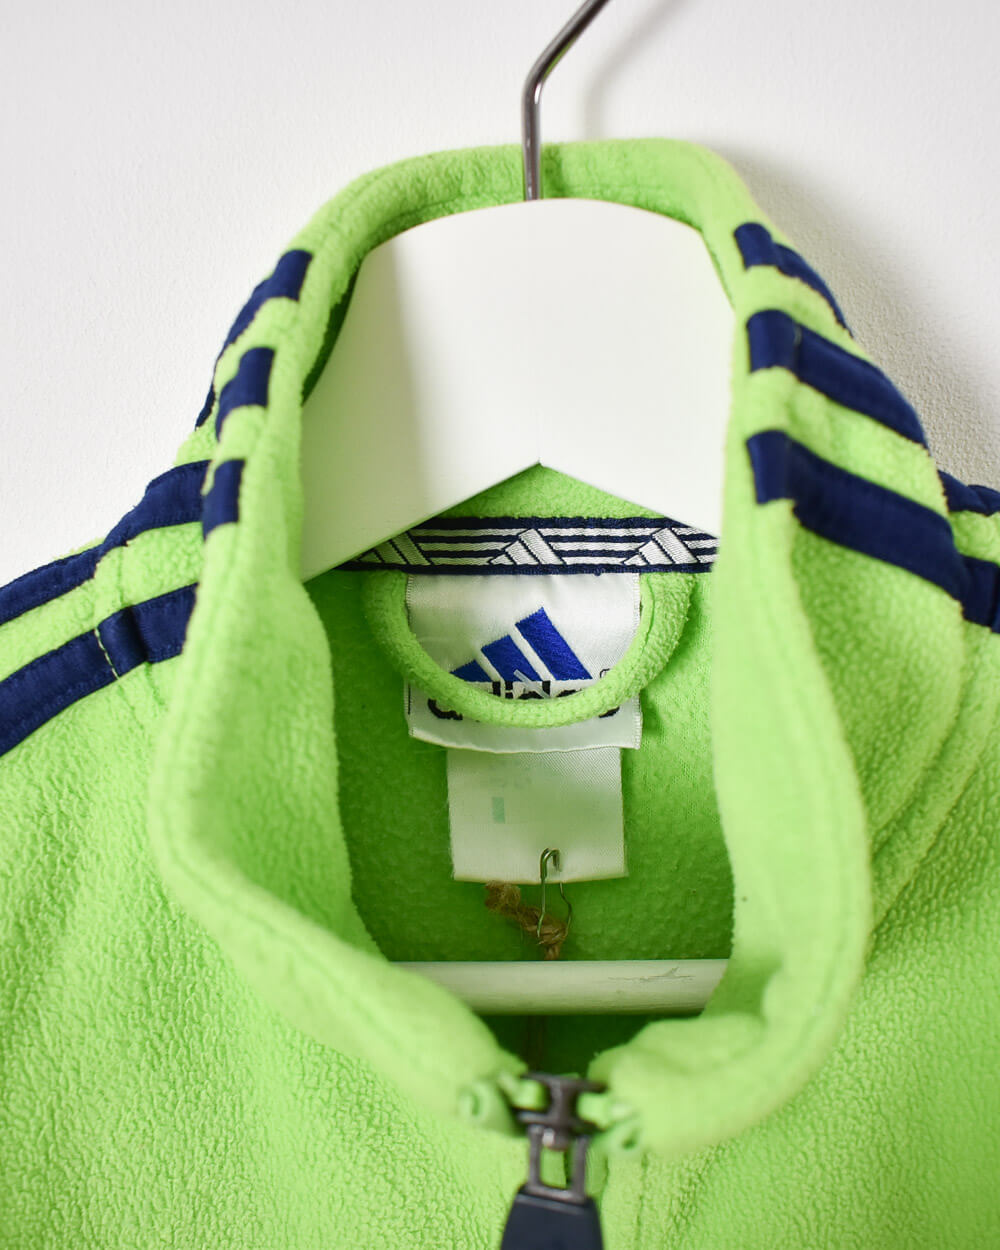 Green Adidas Zip-Through Fleece - Small